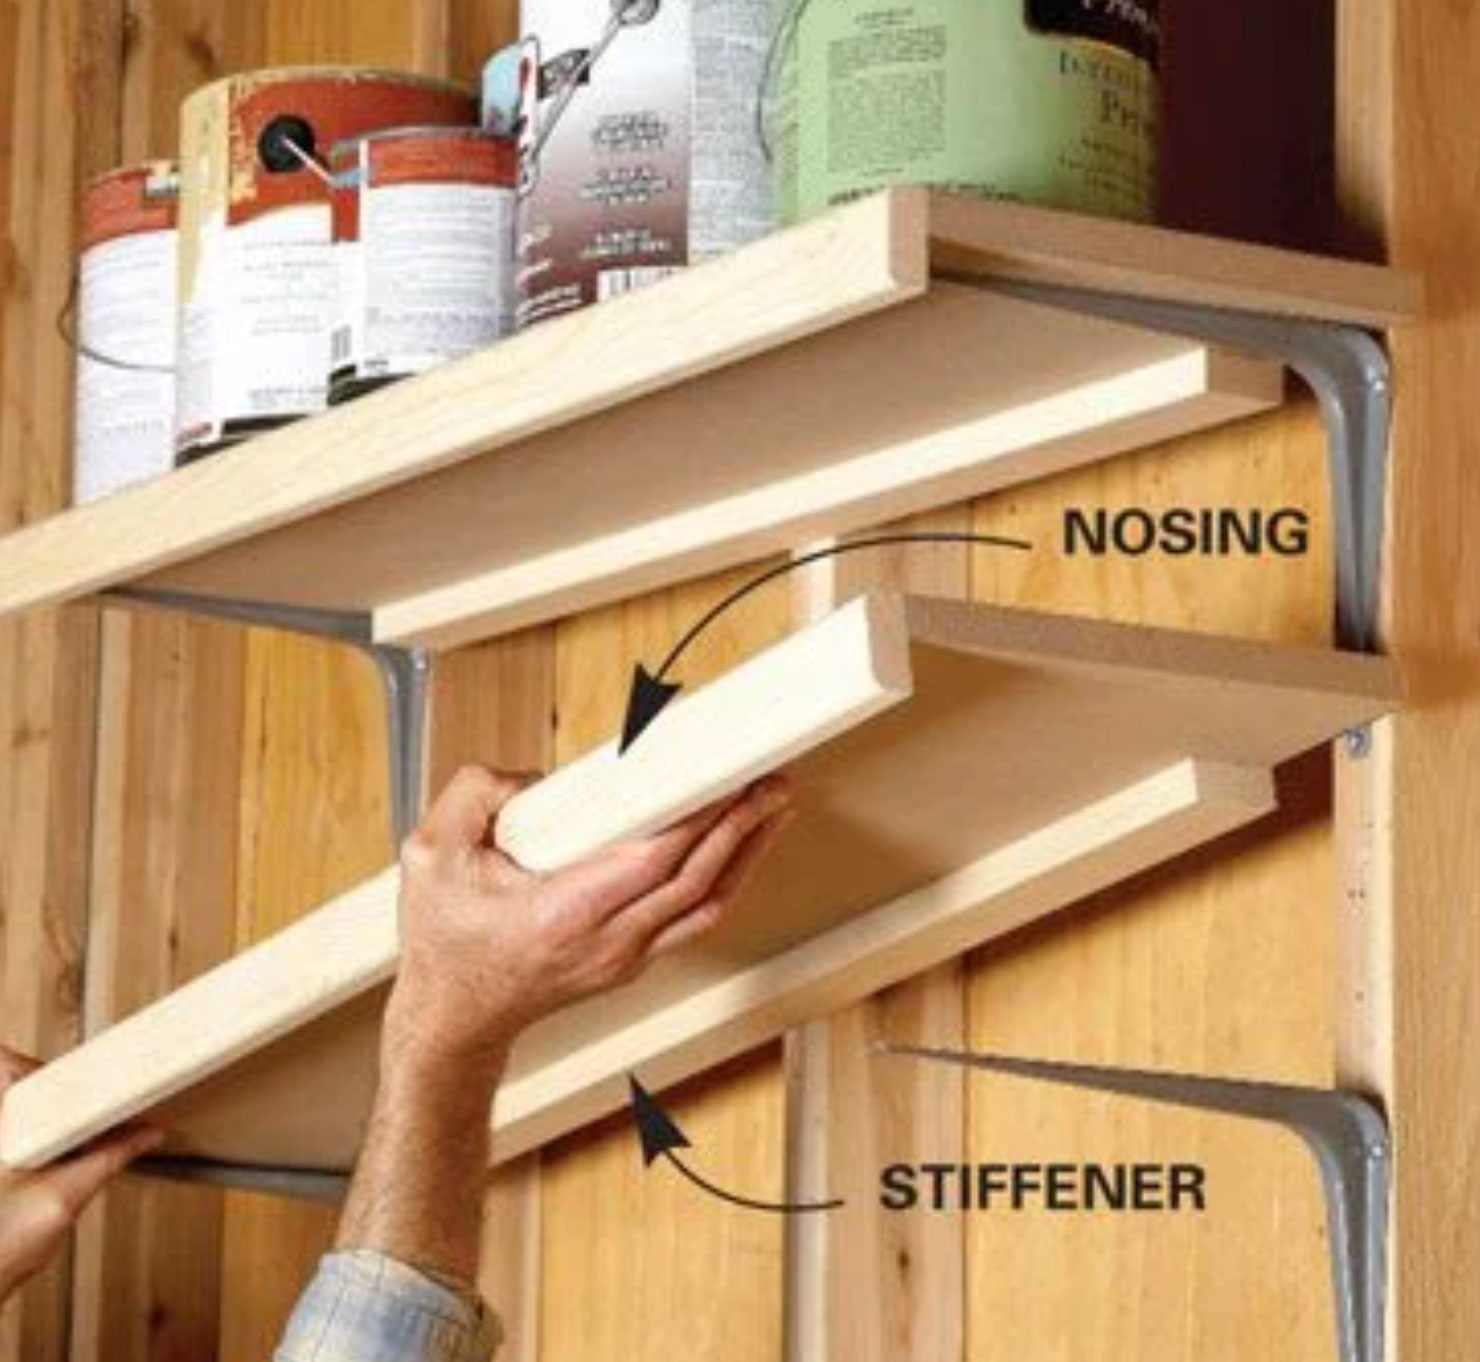 Reinforce MDF shelves